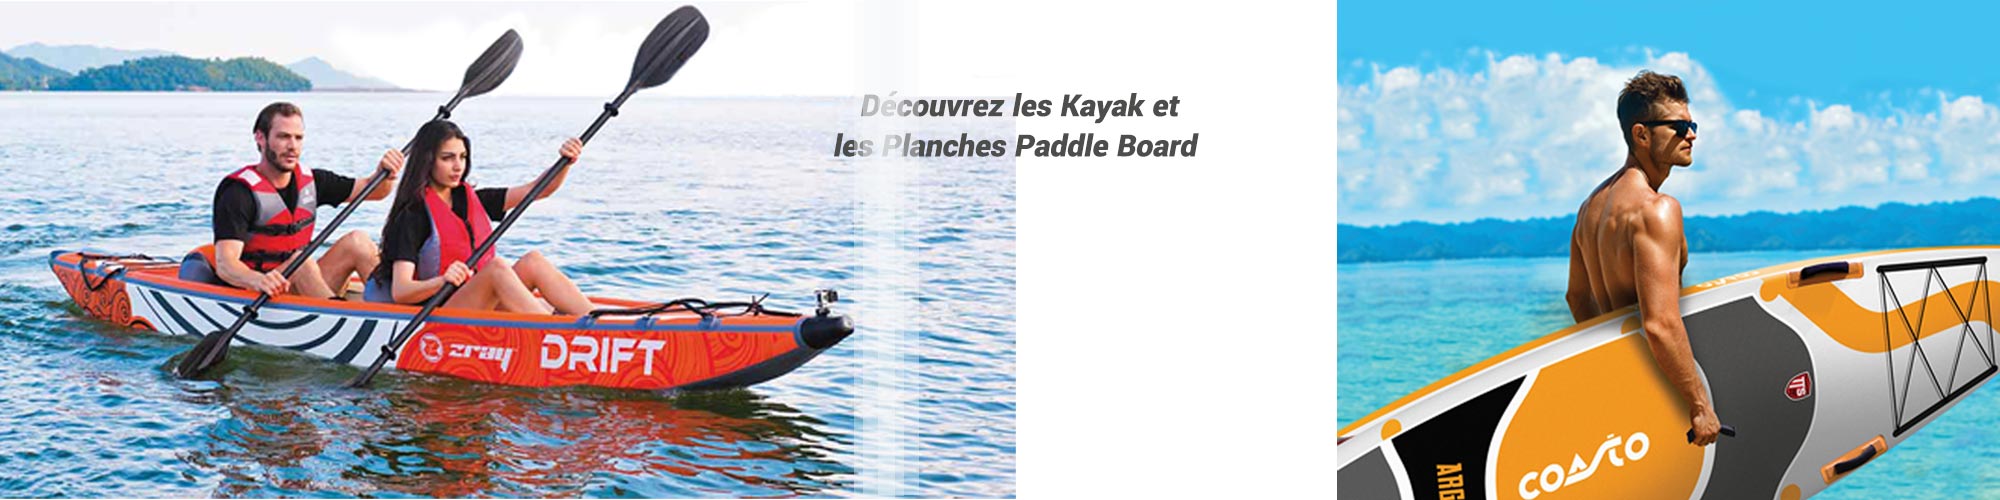 Kayak & Paddle board